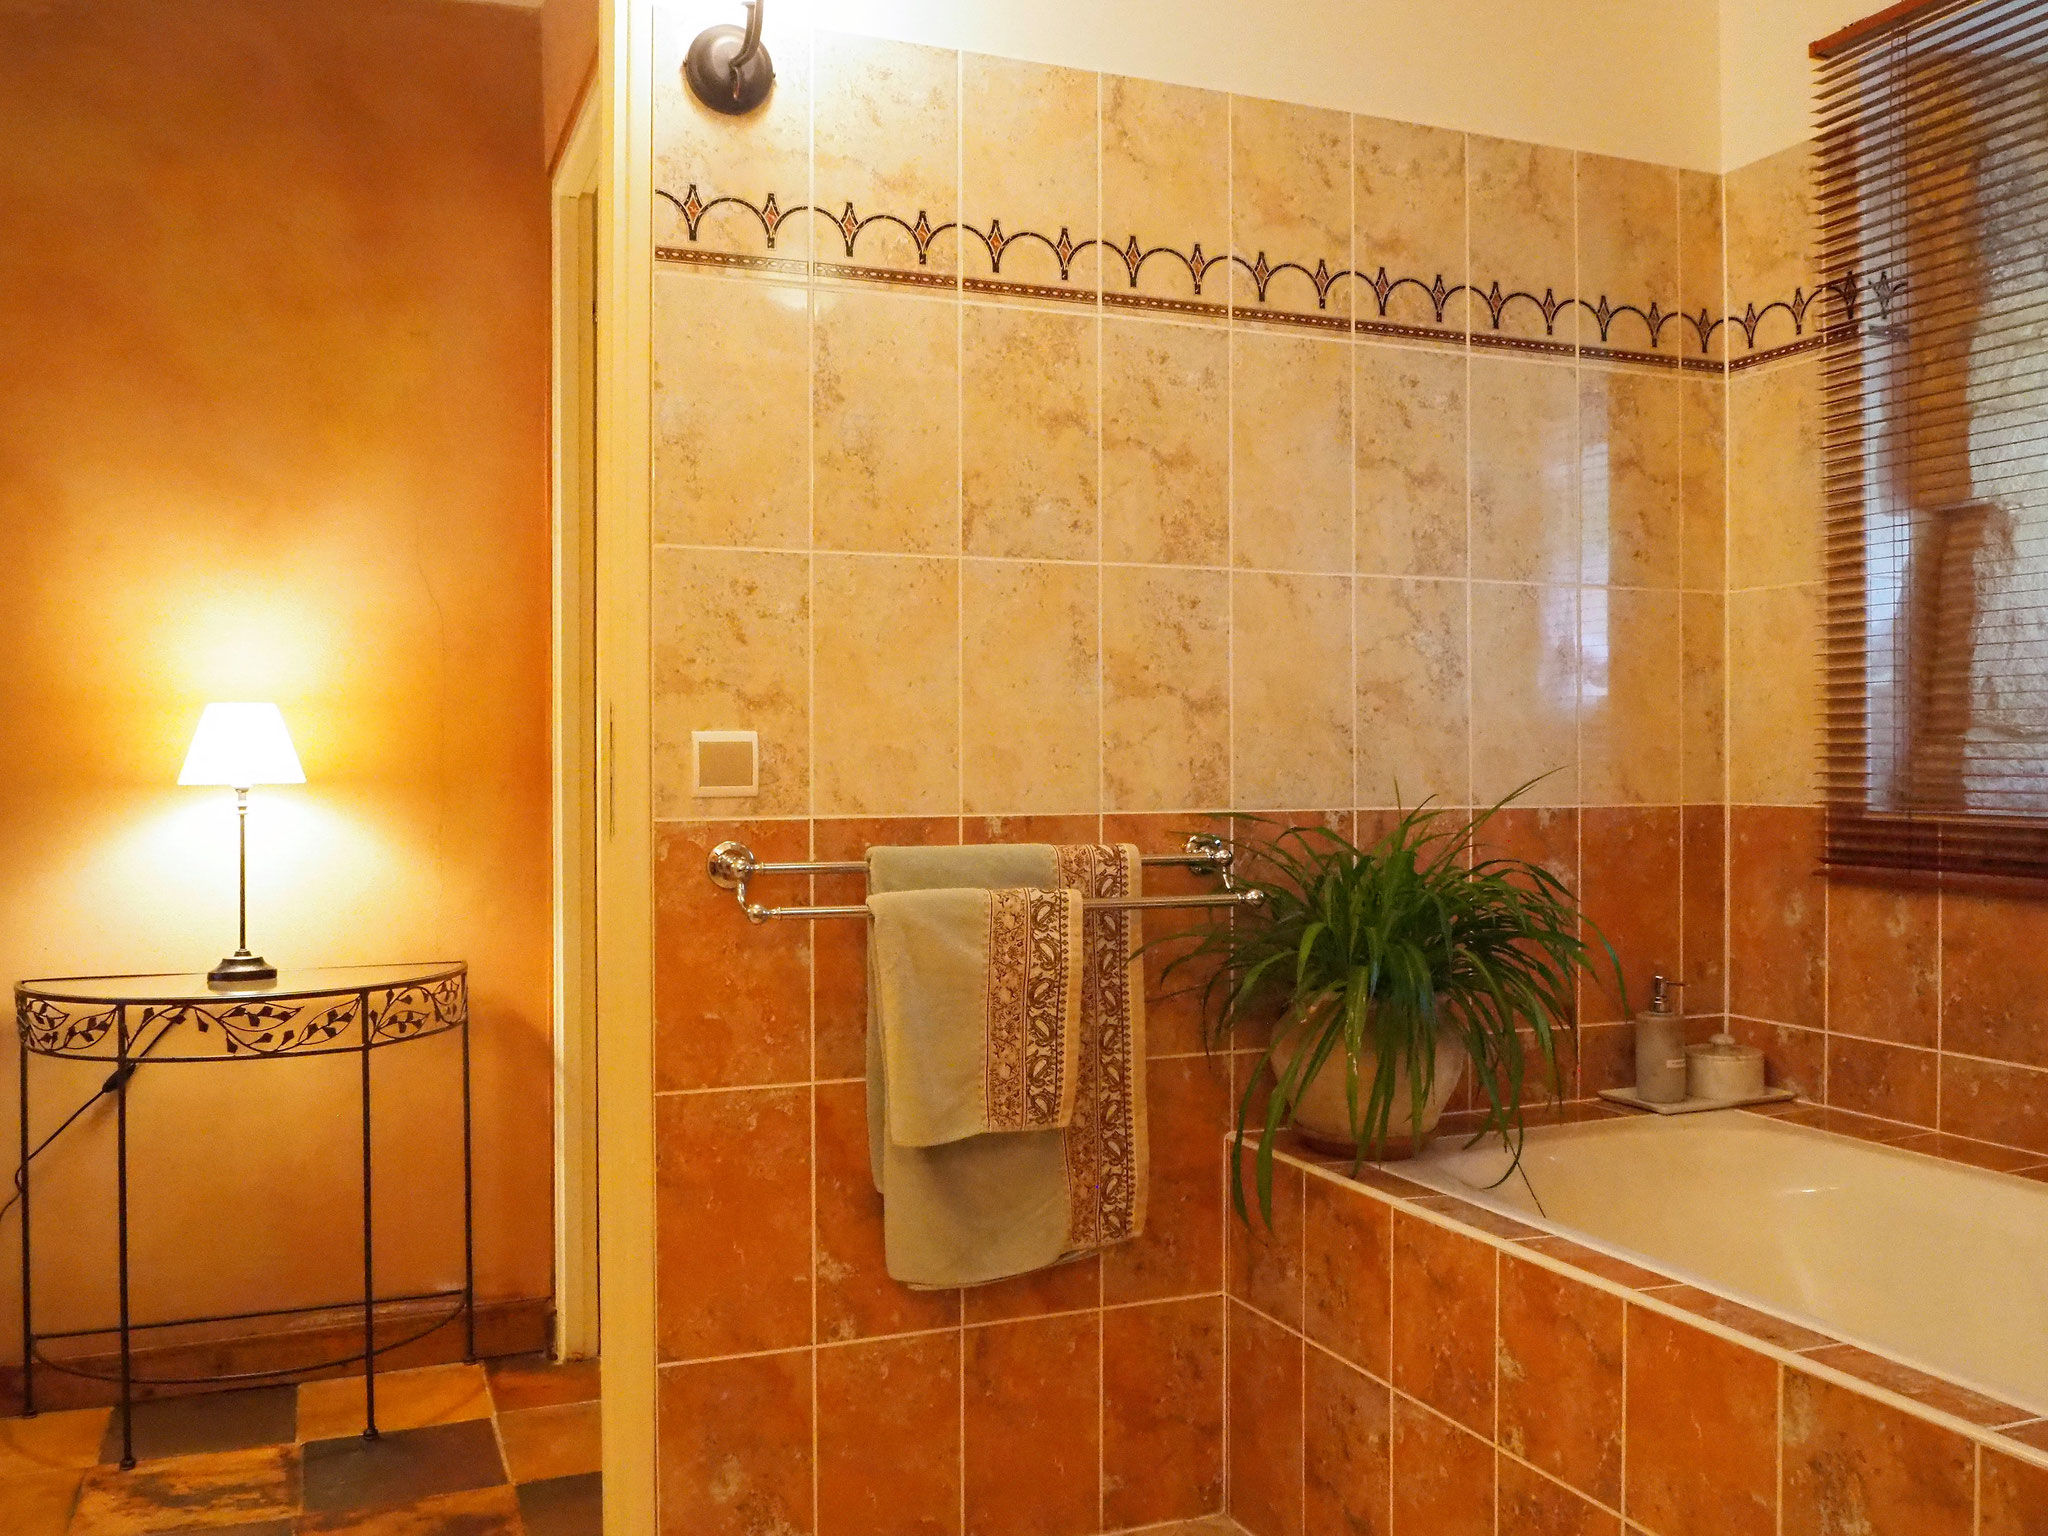 Salle de bains Toscane avec baignoire